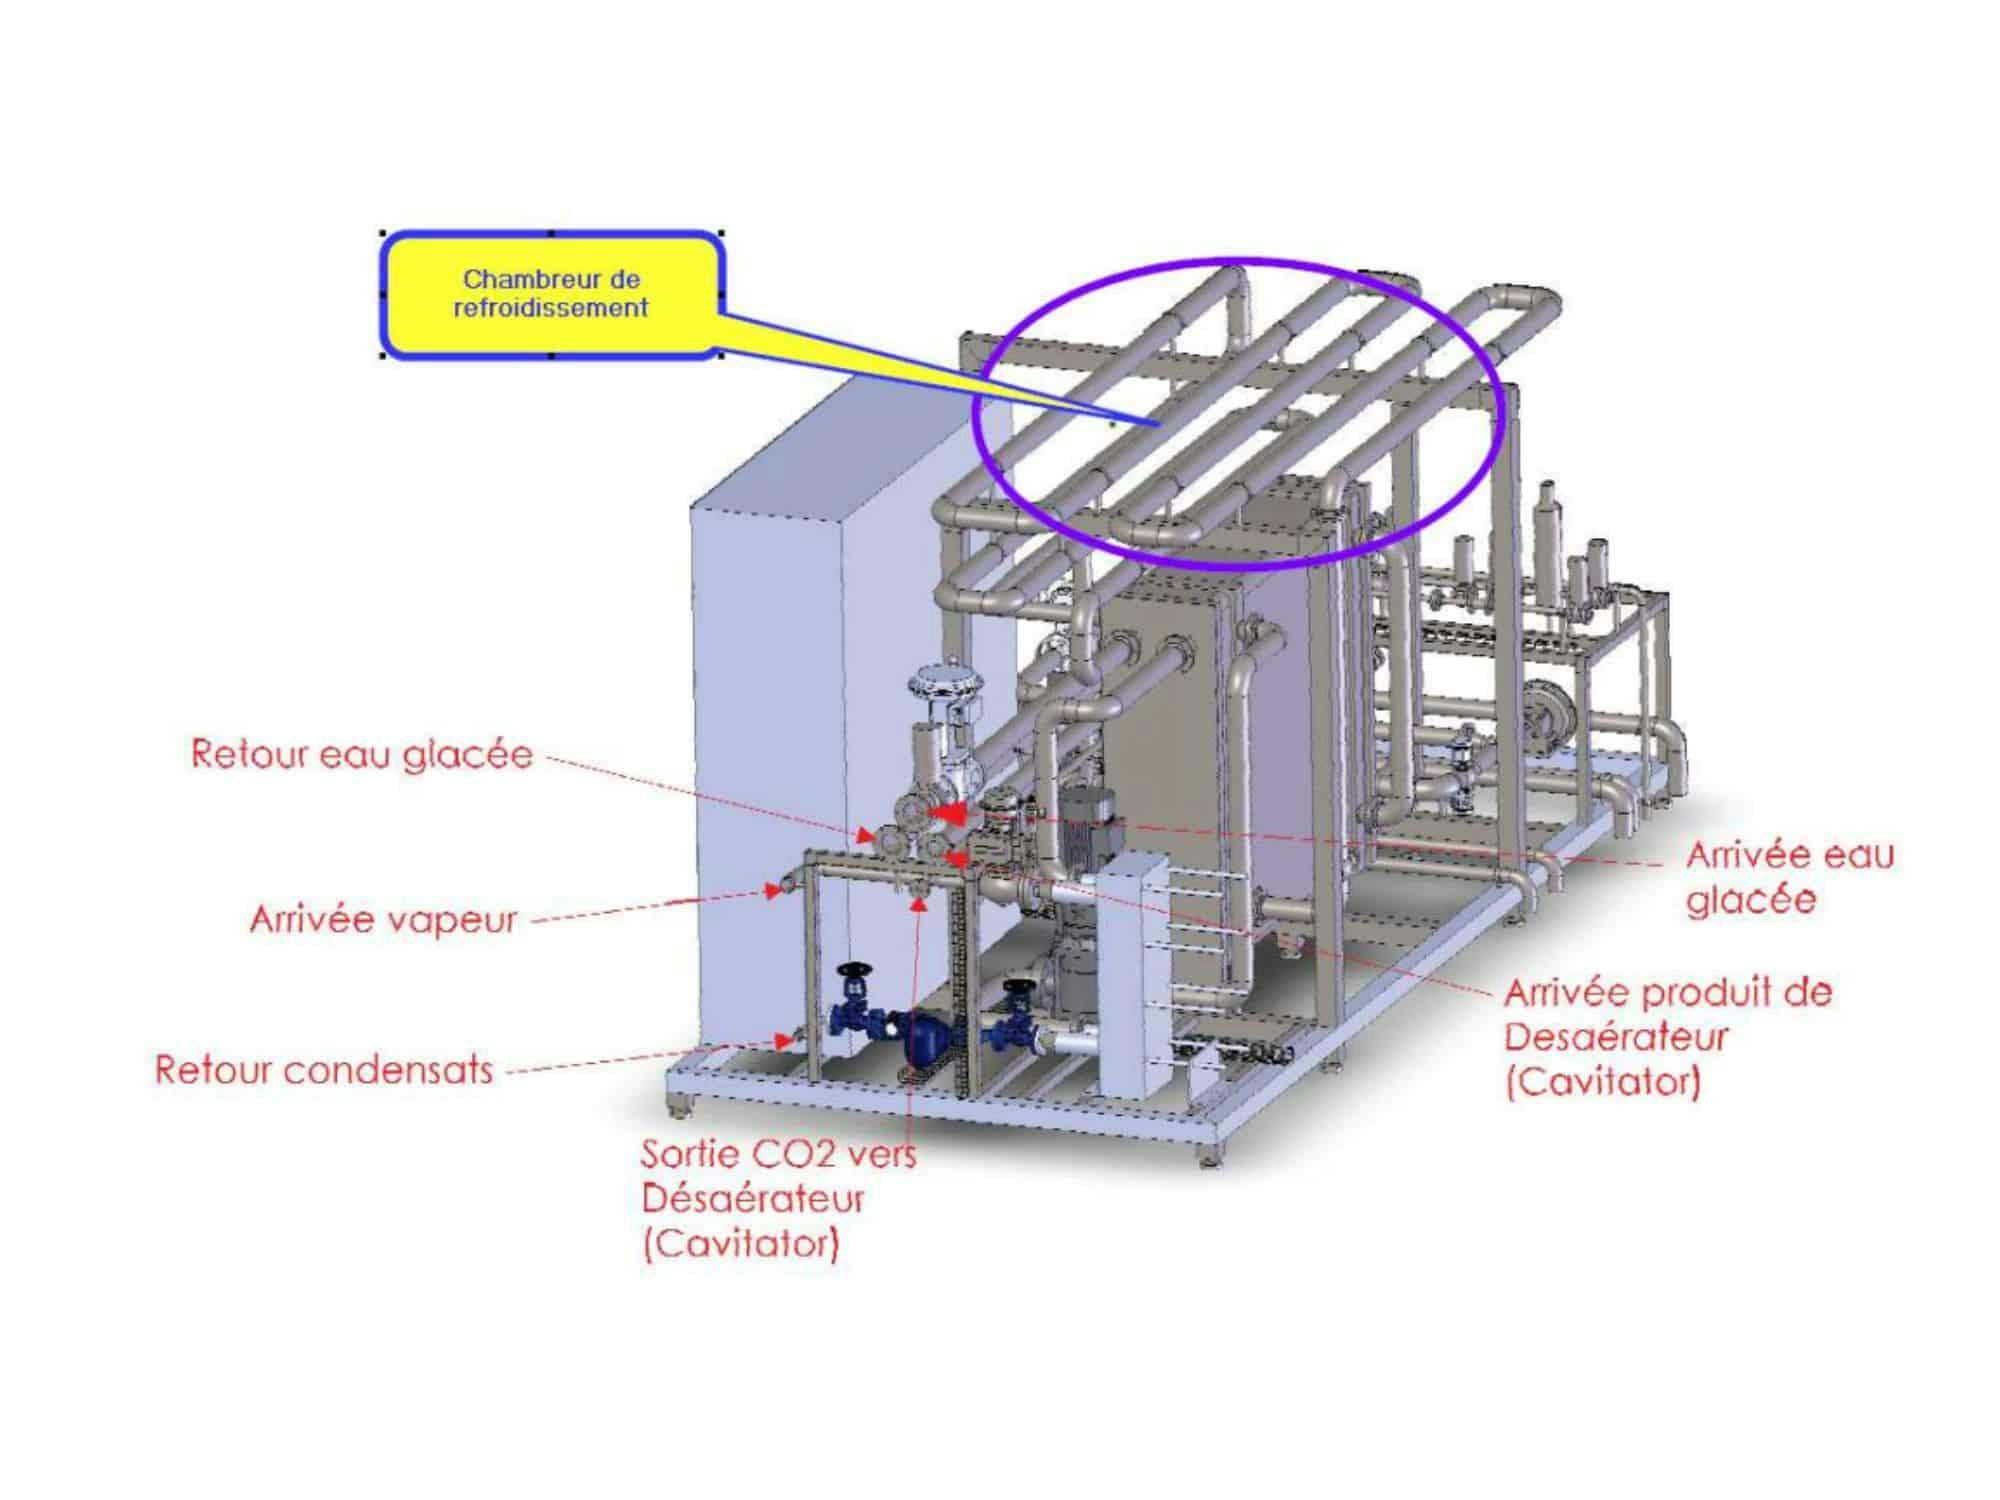 Diseño de Sistemas Cavitadores Unidad de Proceso (Desaireador, Pasteurizador, Carbonizador)